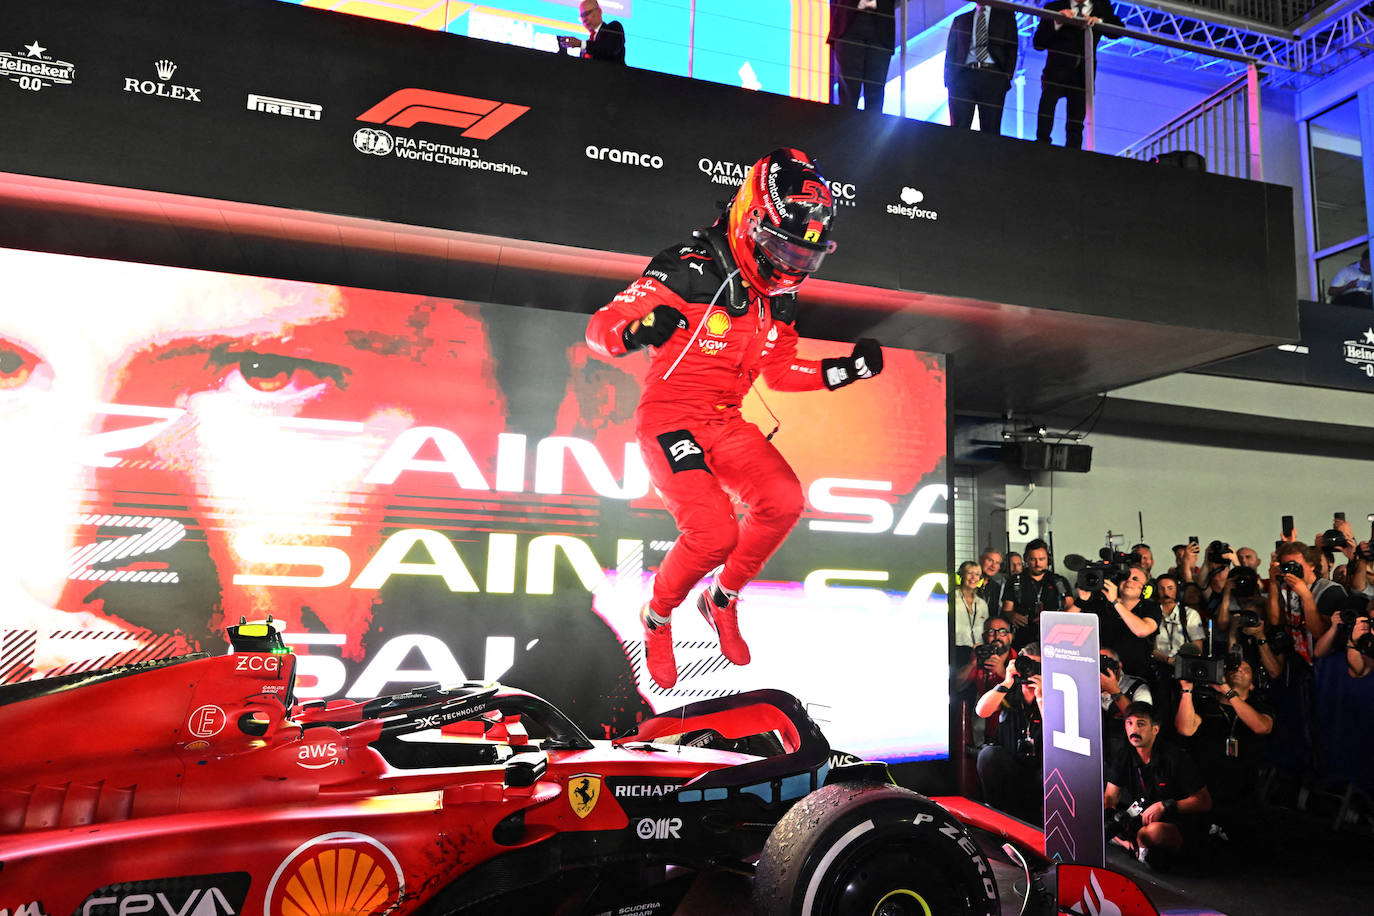 «Es un sentimiento increíble y un fin de semana increíble. Gracias a todos en Ferrari porque han hecho un enorme esfuerzo para darle la vuelta al tumultuoso inicio de temporada. Hemos hecho todo lo que teníamos que hacer en la carrera y nos vamos con una victoria que todo Ferrari y toda Italia estará orgullosa», destacó el madrileño.